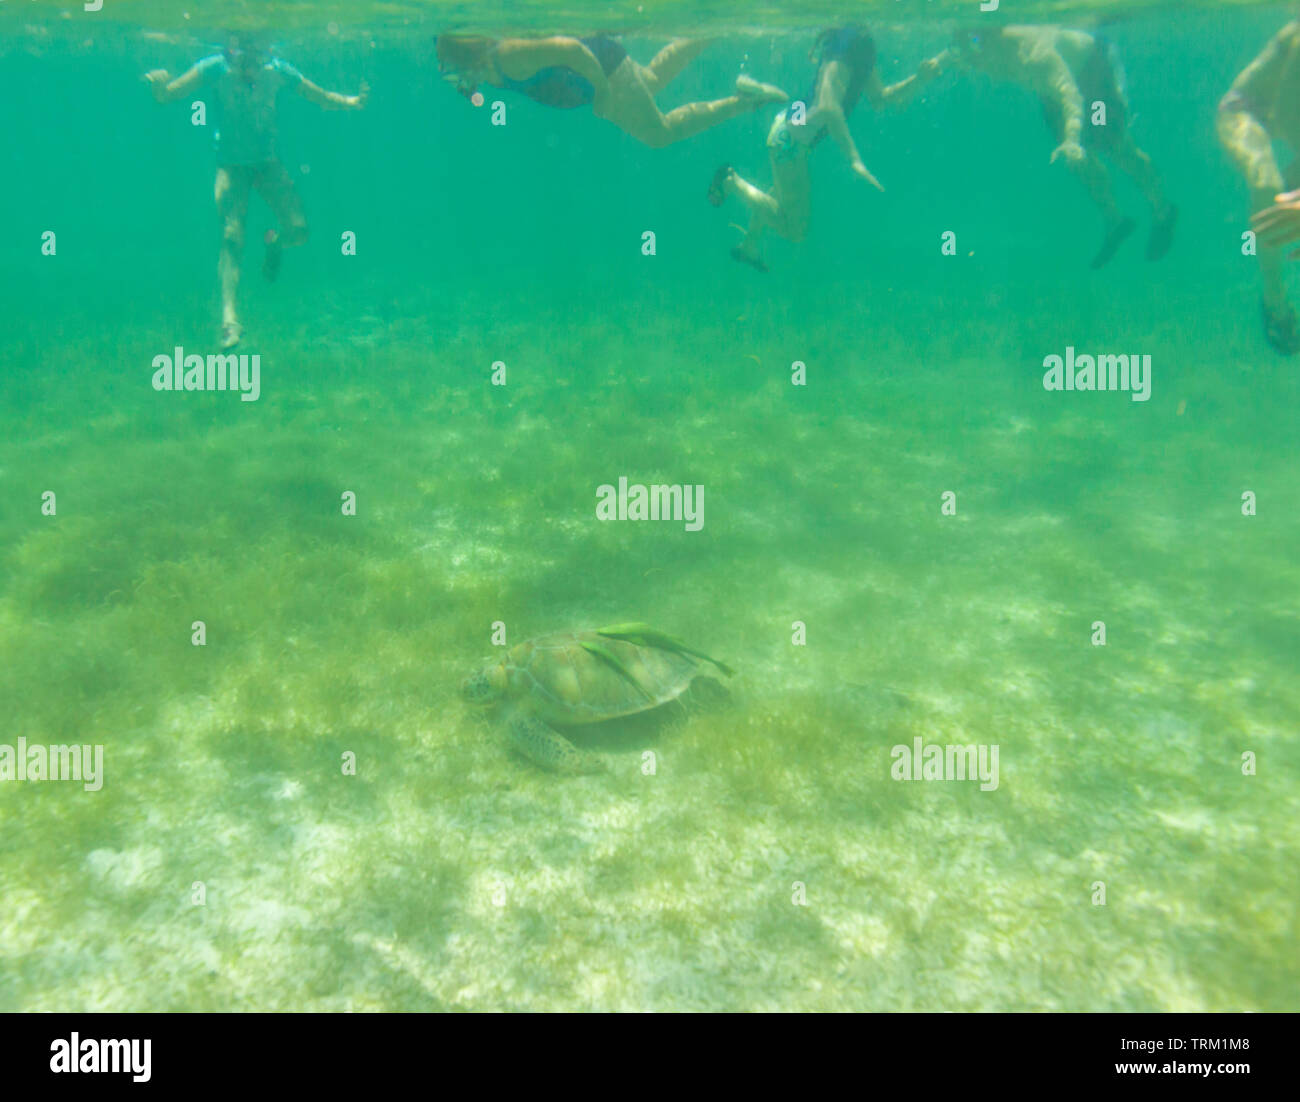 TORTUGA VERDE O BLANCA - GREEN SEA TURTLE (Chelonia mydas), Playa Akumal, Estado de Quntana Roo, Península de Yucatán, México Stock Photo